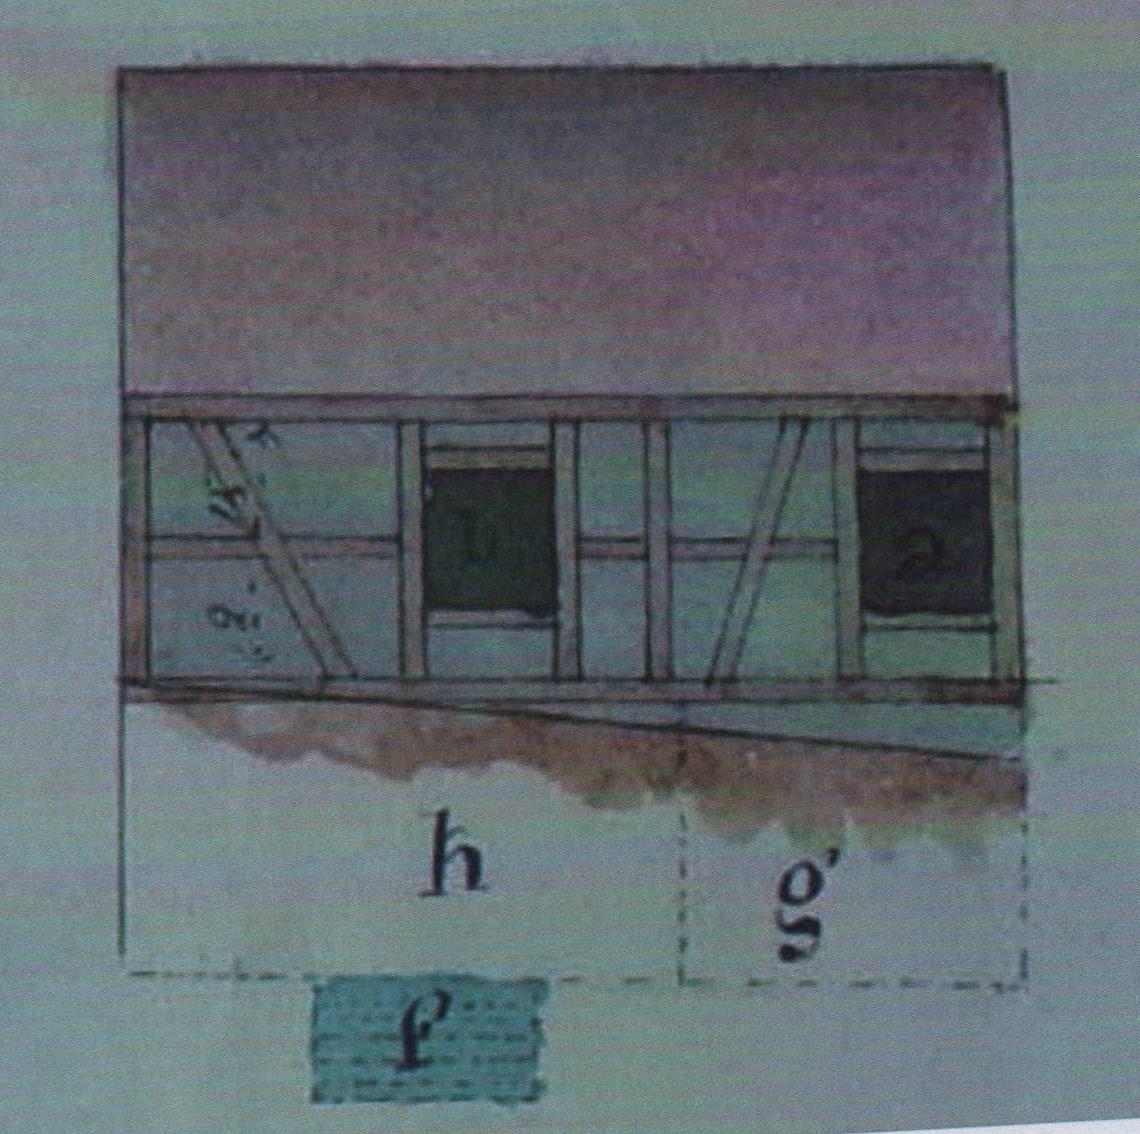 Le plan de la maison du chantre et le mikvé, installé dans le sous-sol (f).